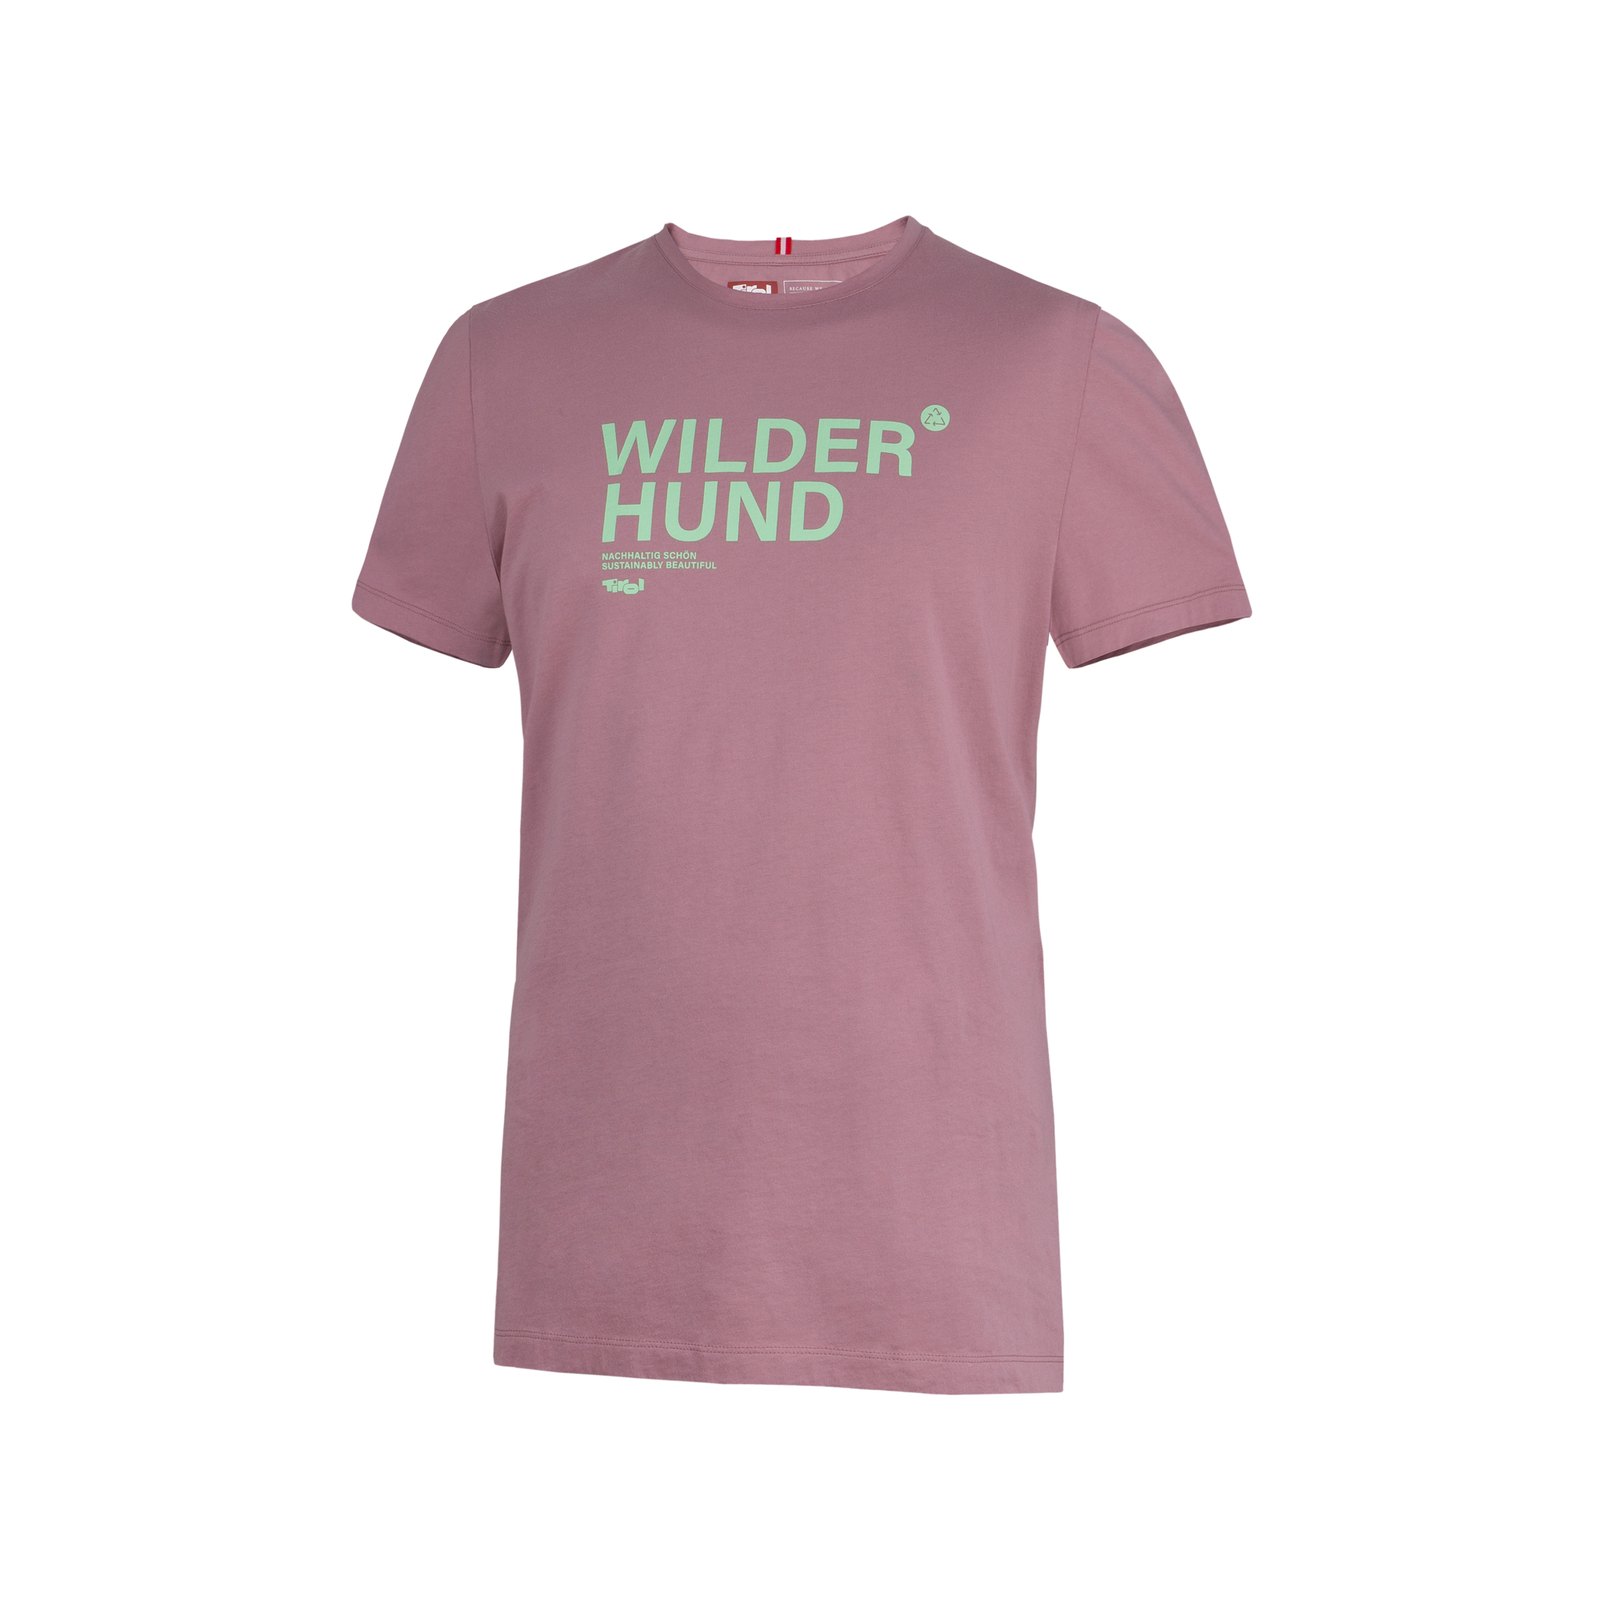 Herren T-Shirt "Wilder Hund" malve